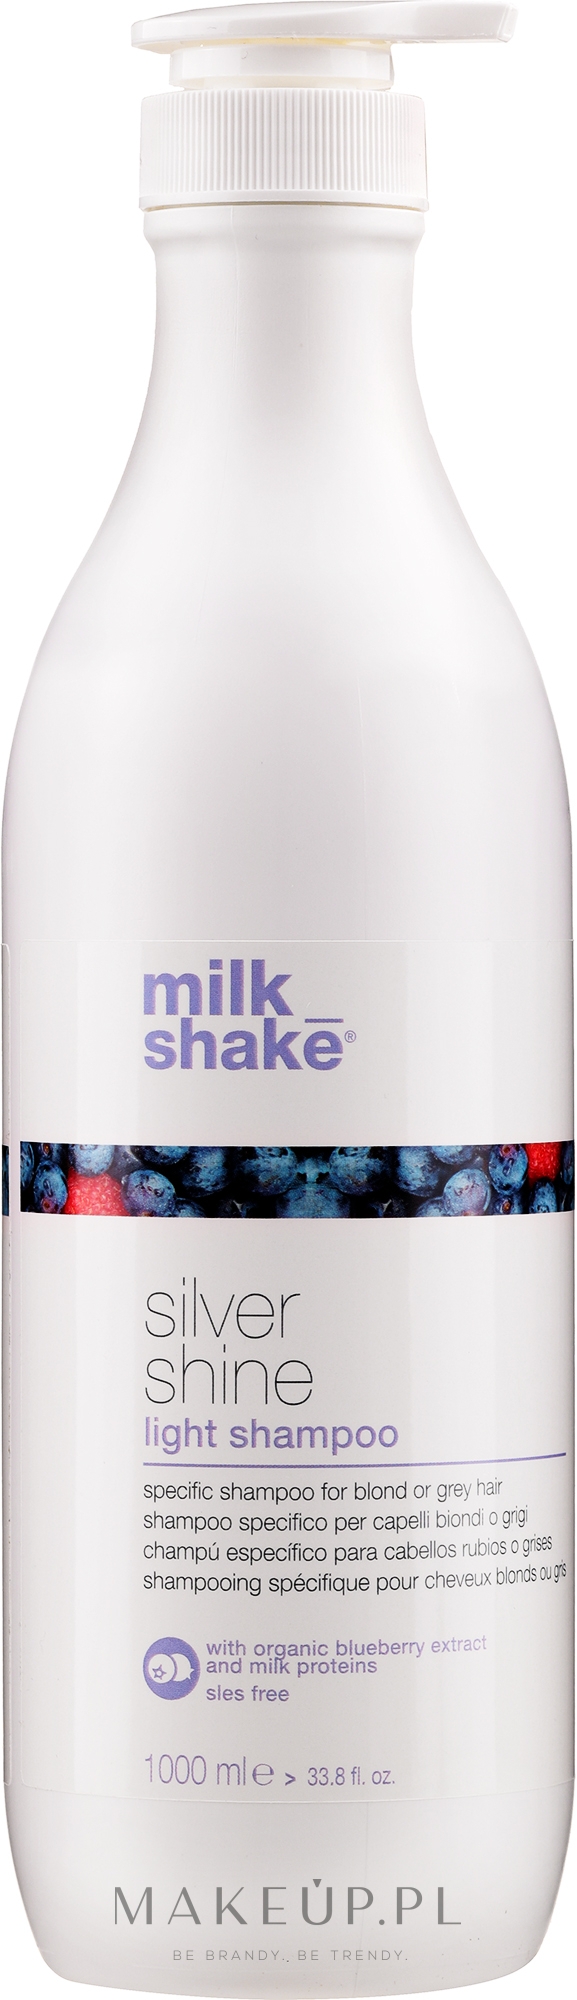 Delikatny szampon do włosów siwych i blond - Milk Shake Silver Shine Light Shampoo — Zdjęcie 1000 ml